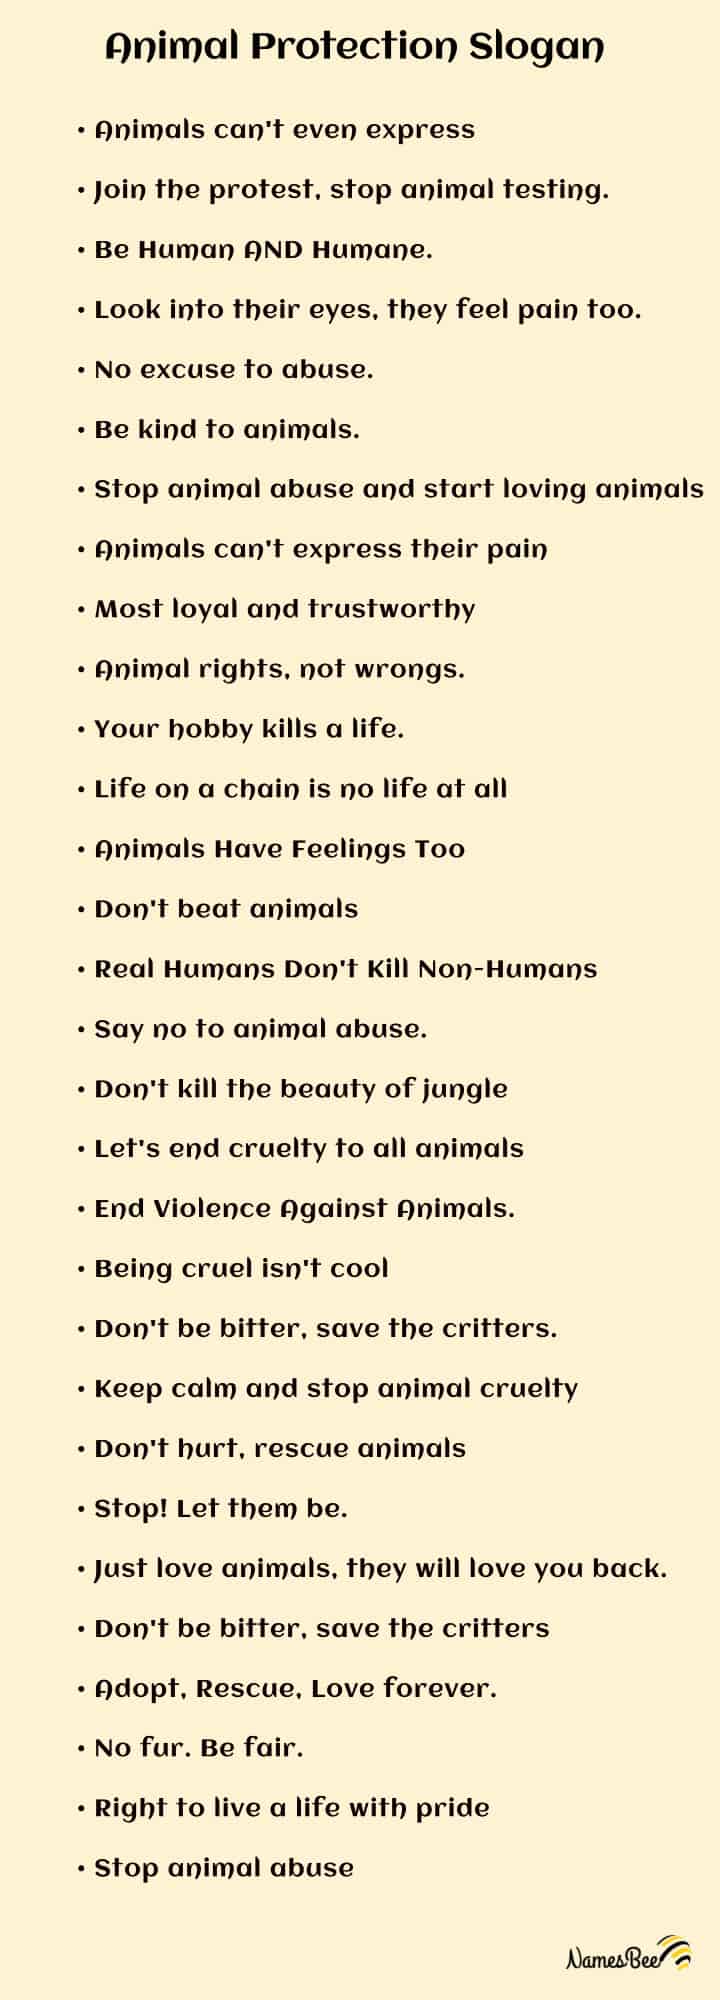 slogans on animal cruelty